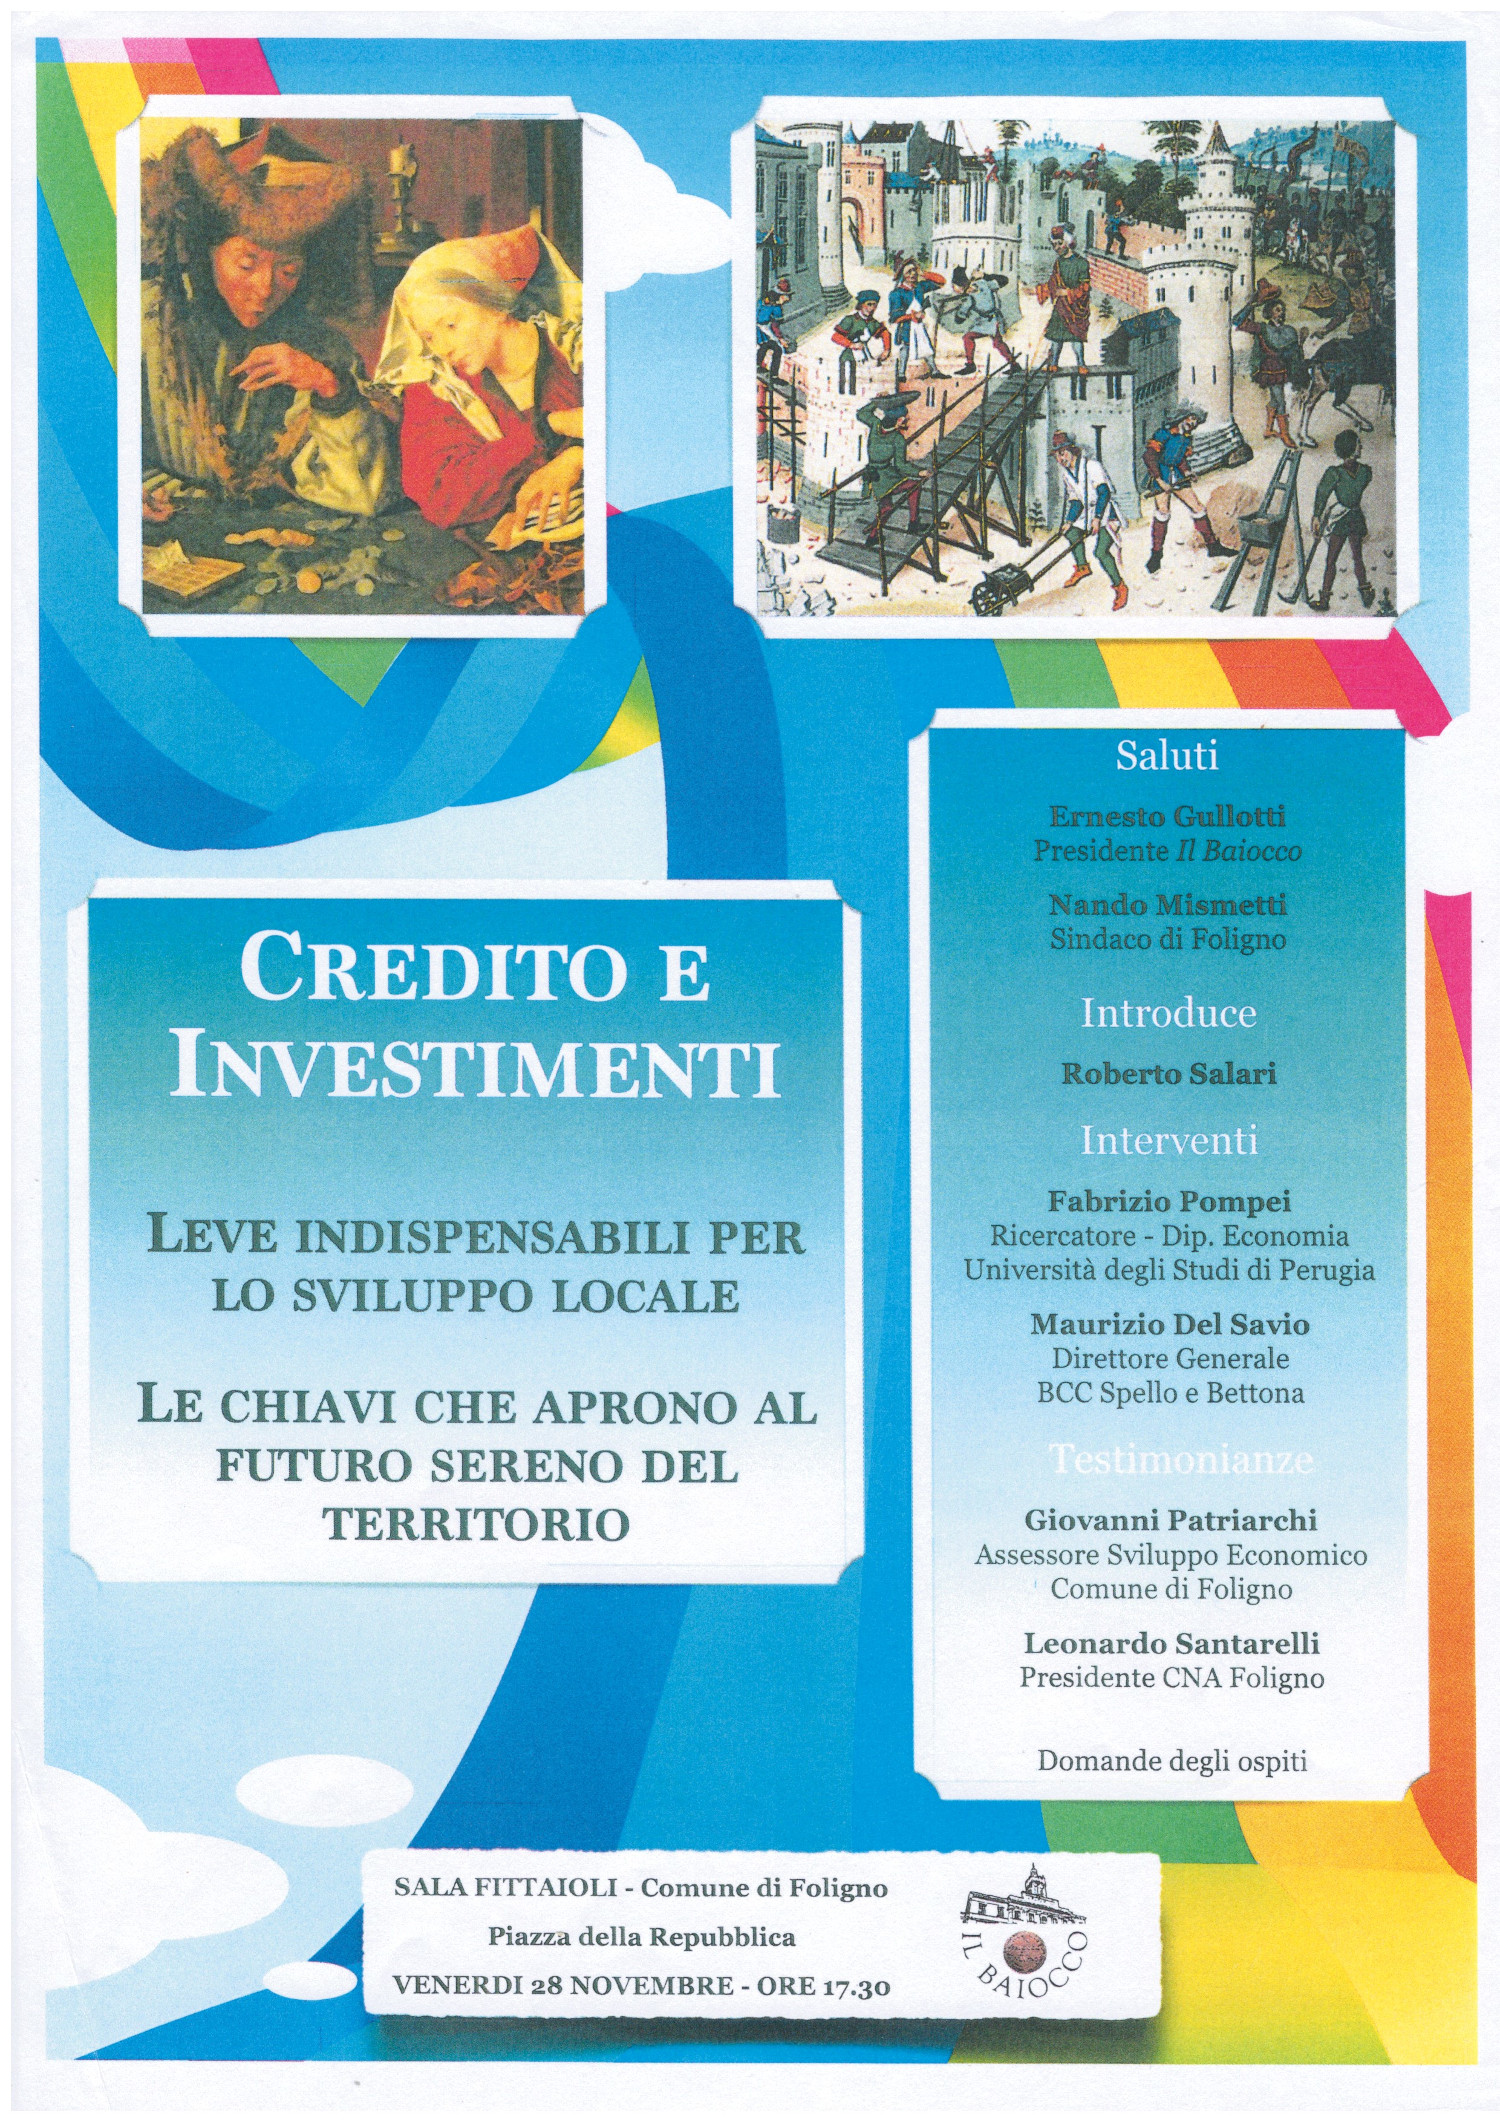 Evento 10 - 28 11 2014 - Credito ed Investimenti